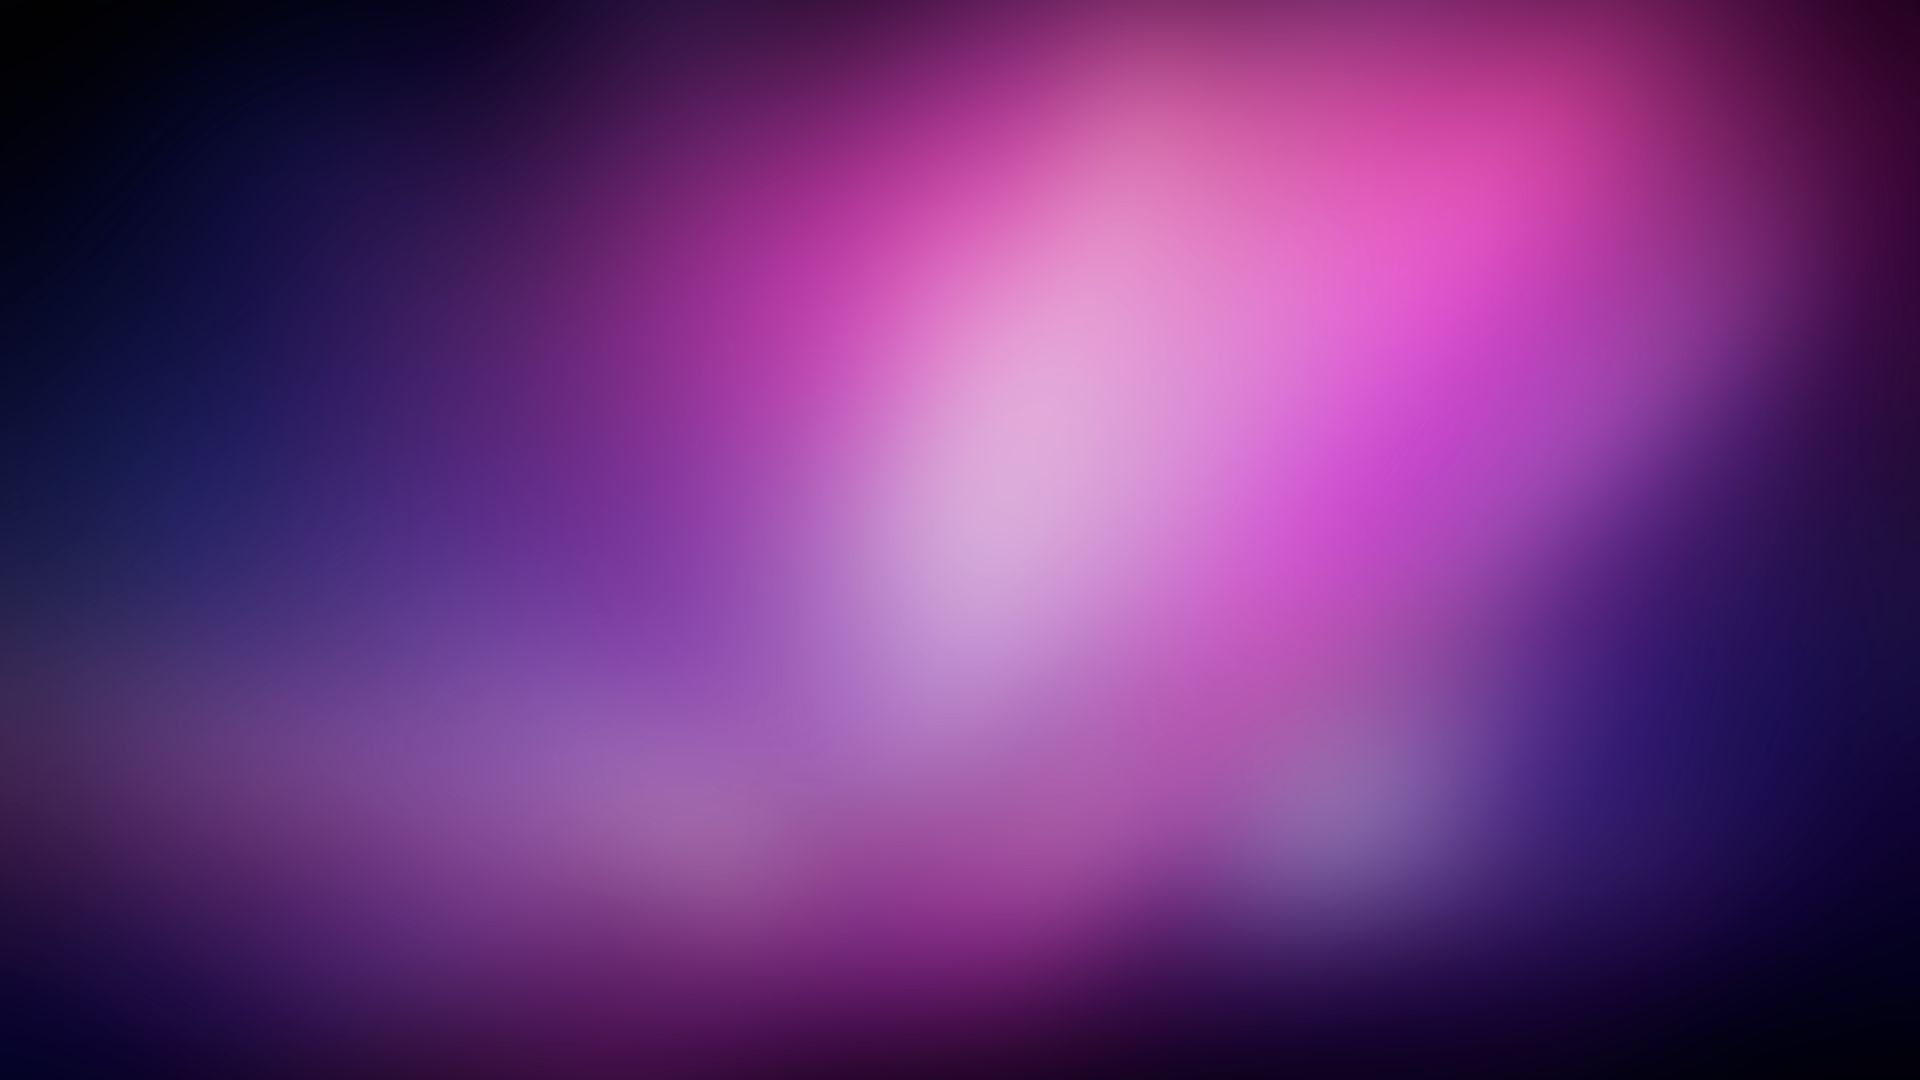 General 1920x1080 blurred gradient texture pink blue purple digital art